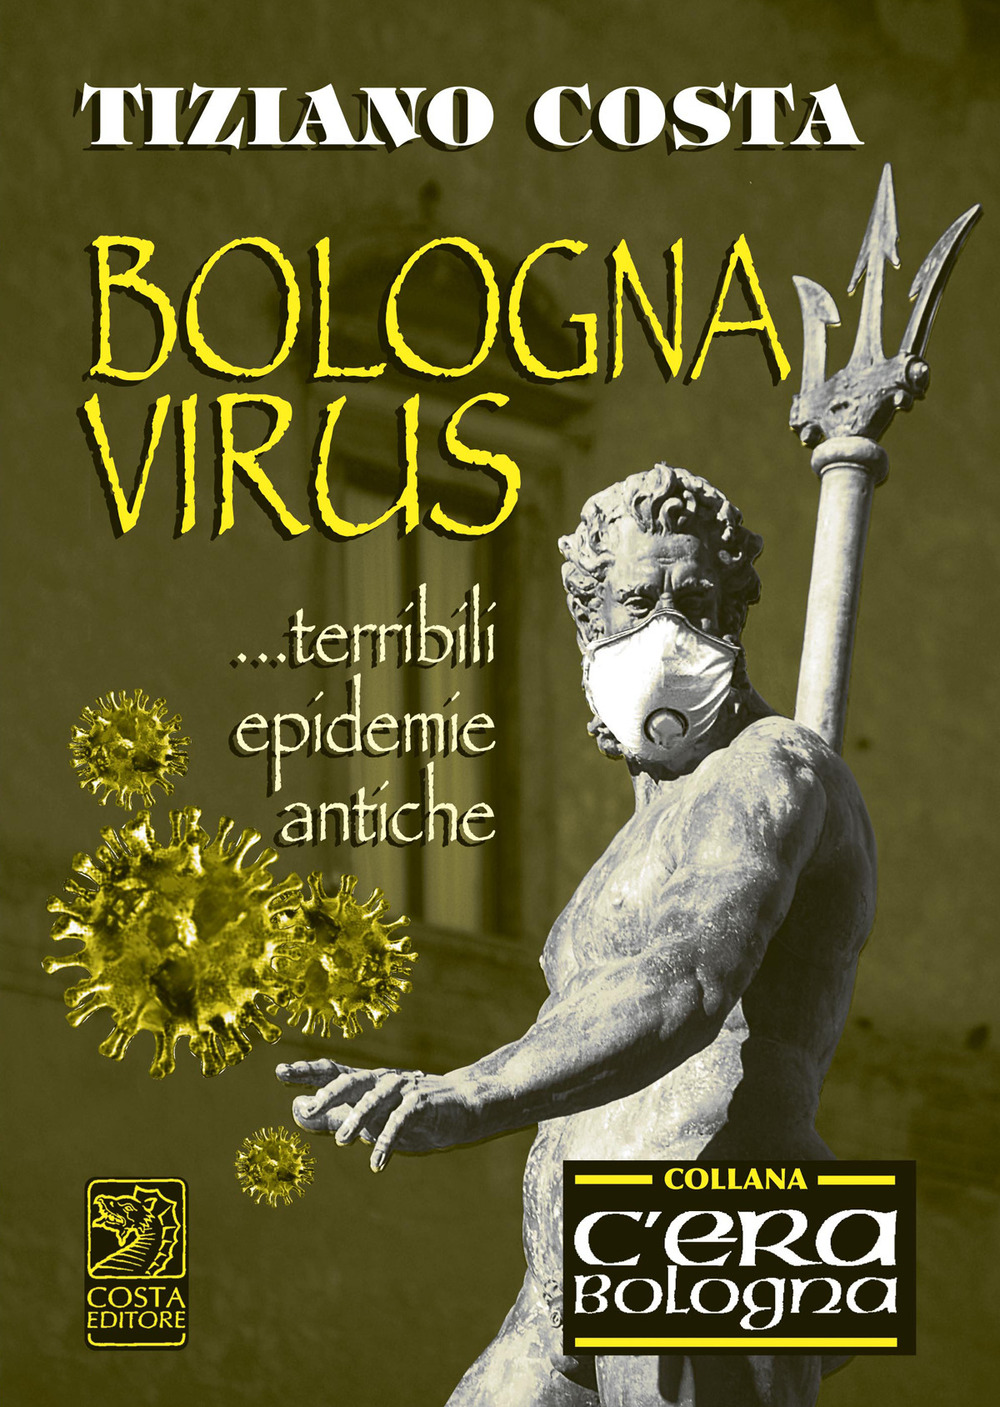 Bologna virus... Terribili epidemie antiche